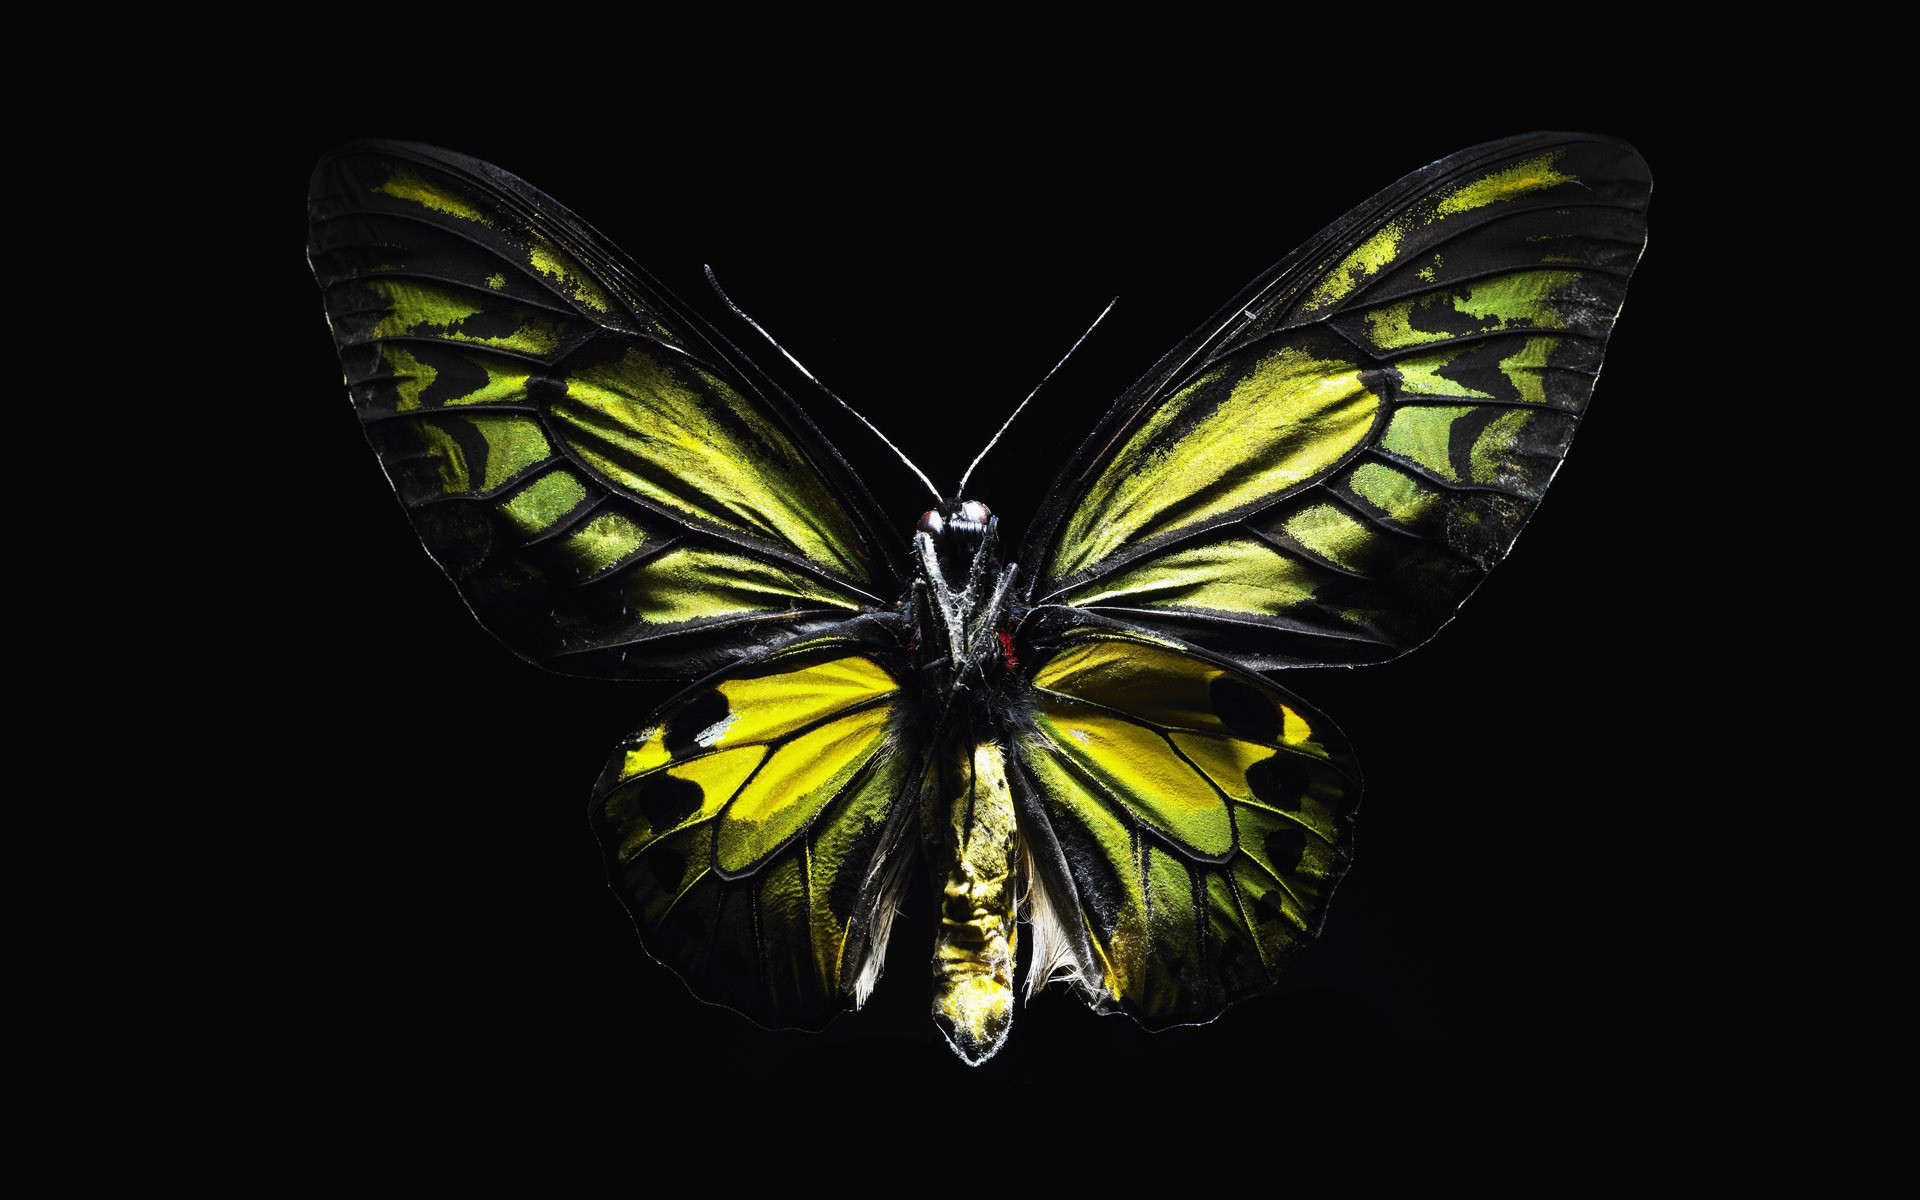 1920x1200 Download wallpaper: gree butterfly, green butterfly on black background,  download wallpapers for desktop